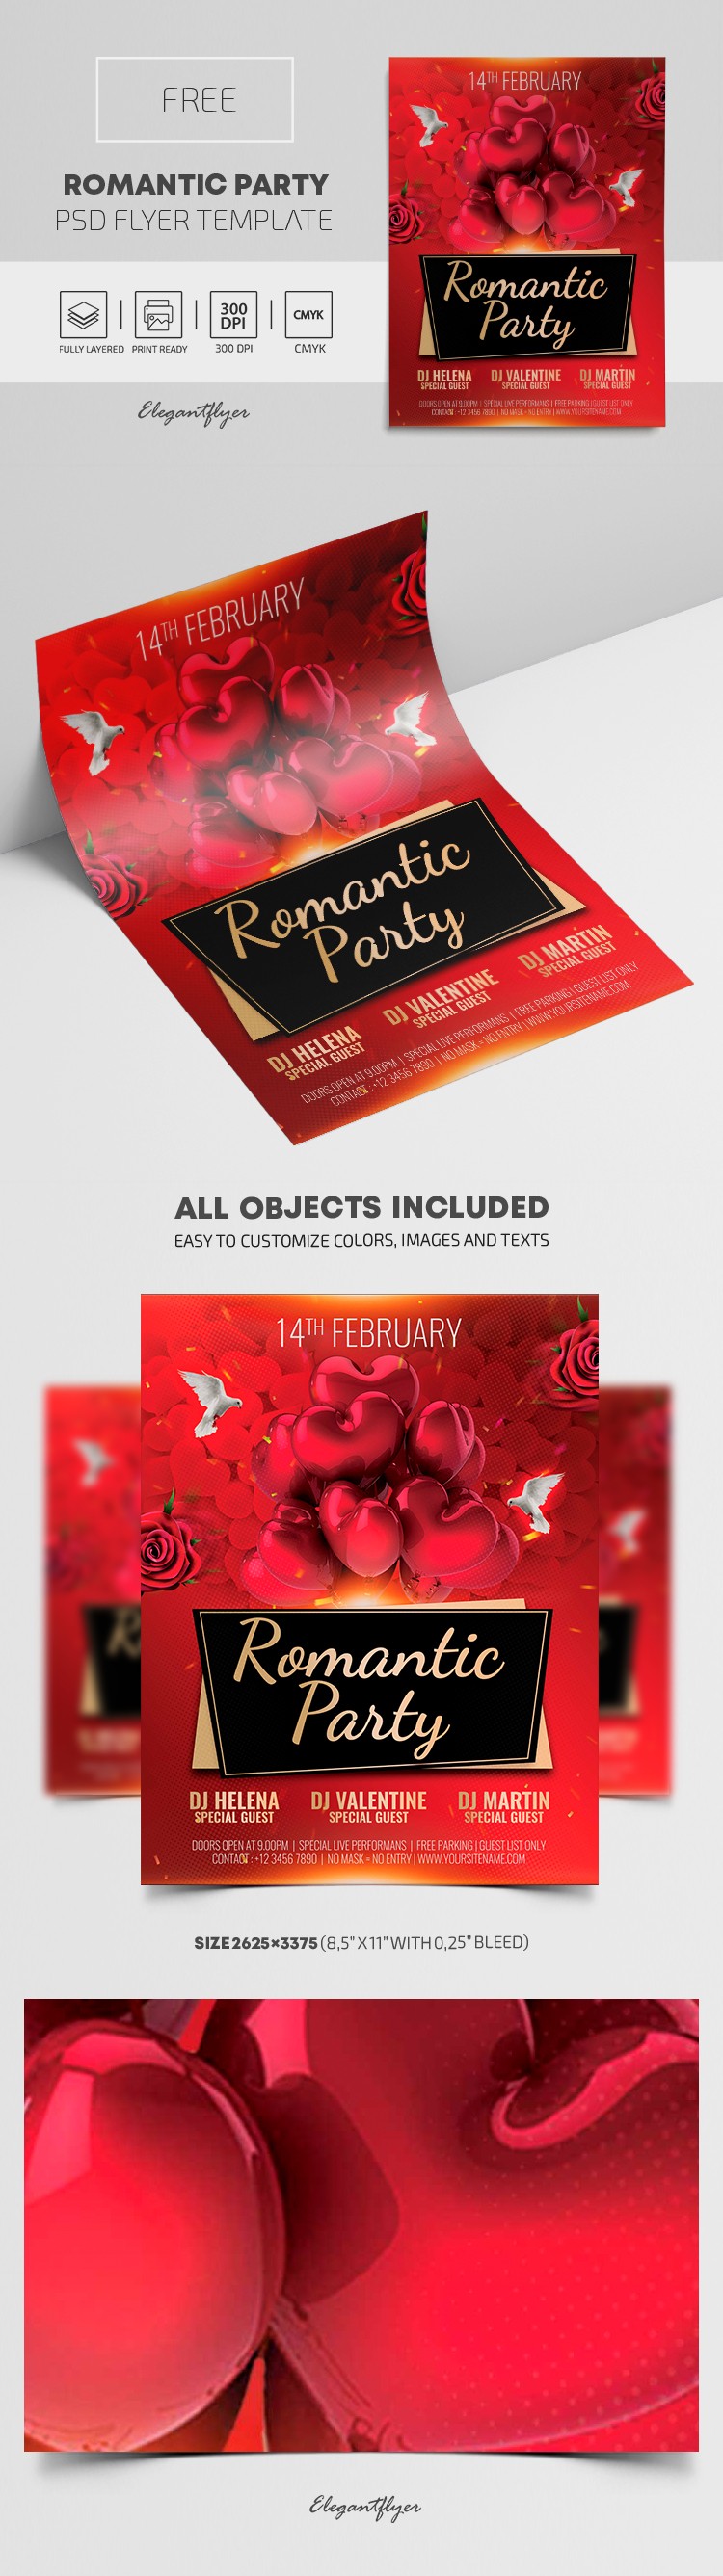 Romantic Party Flyer by ElegantFlyer